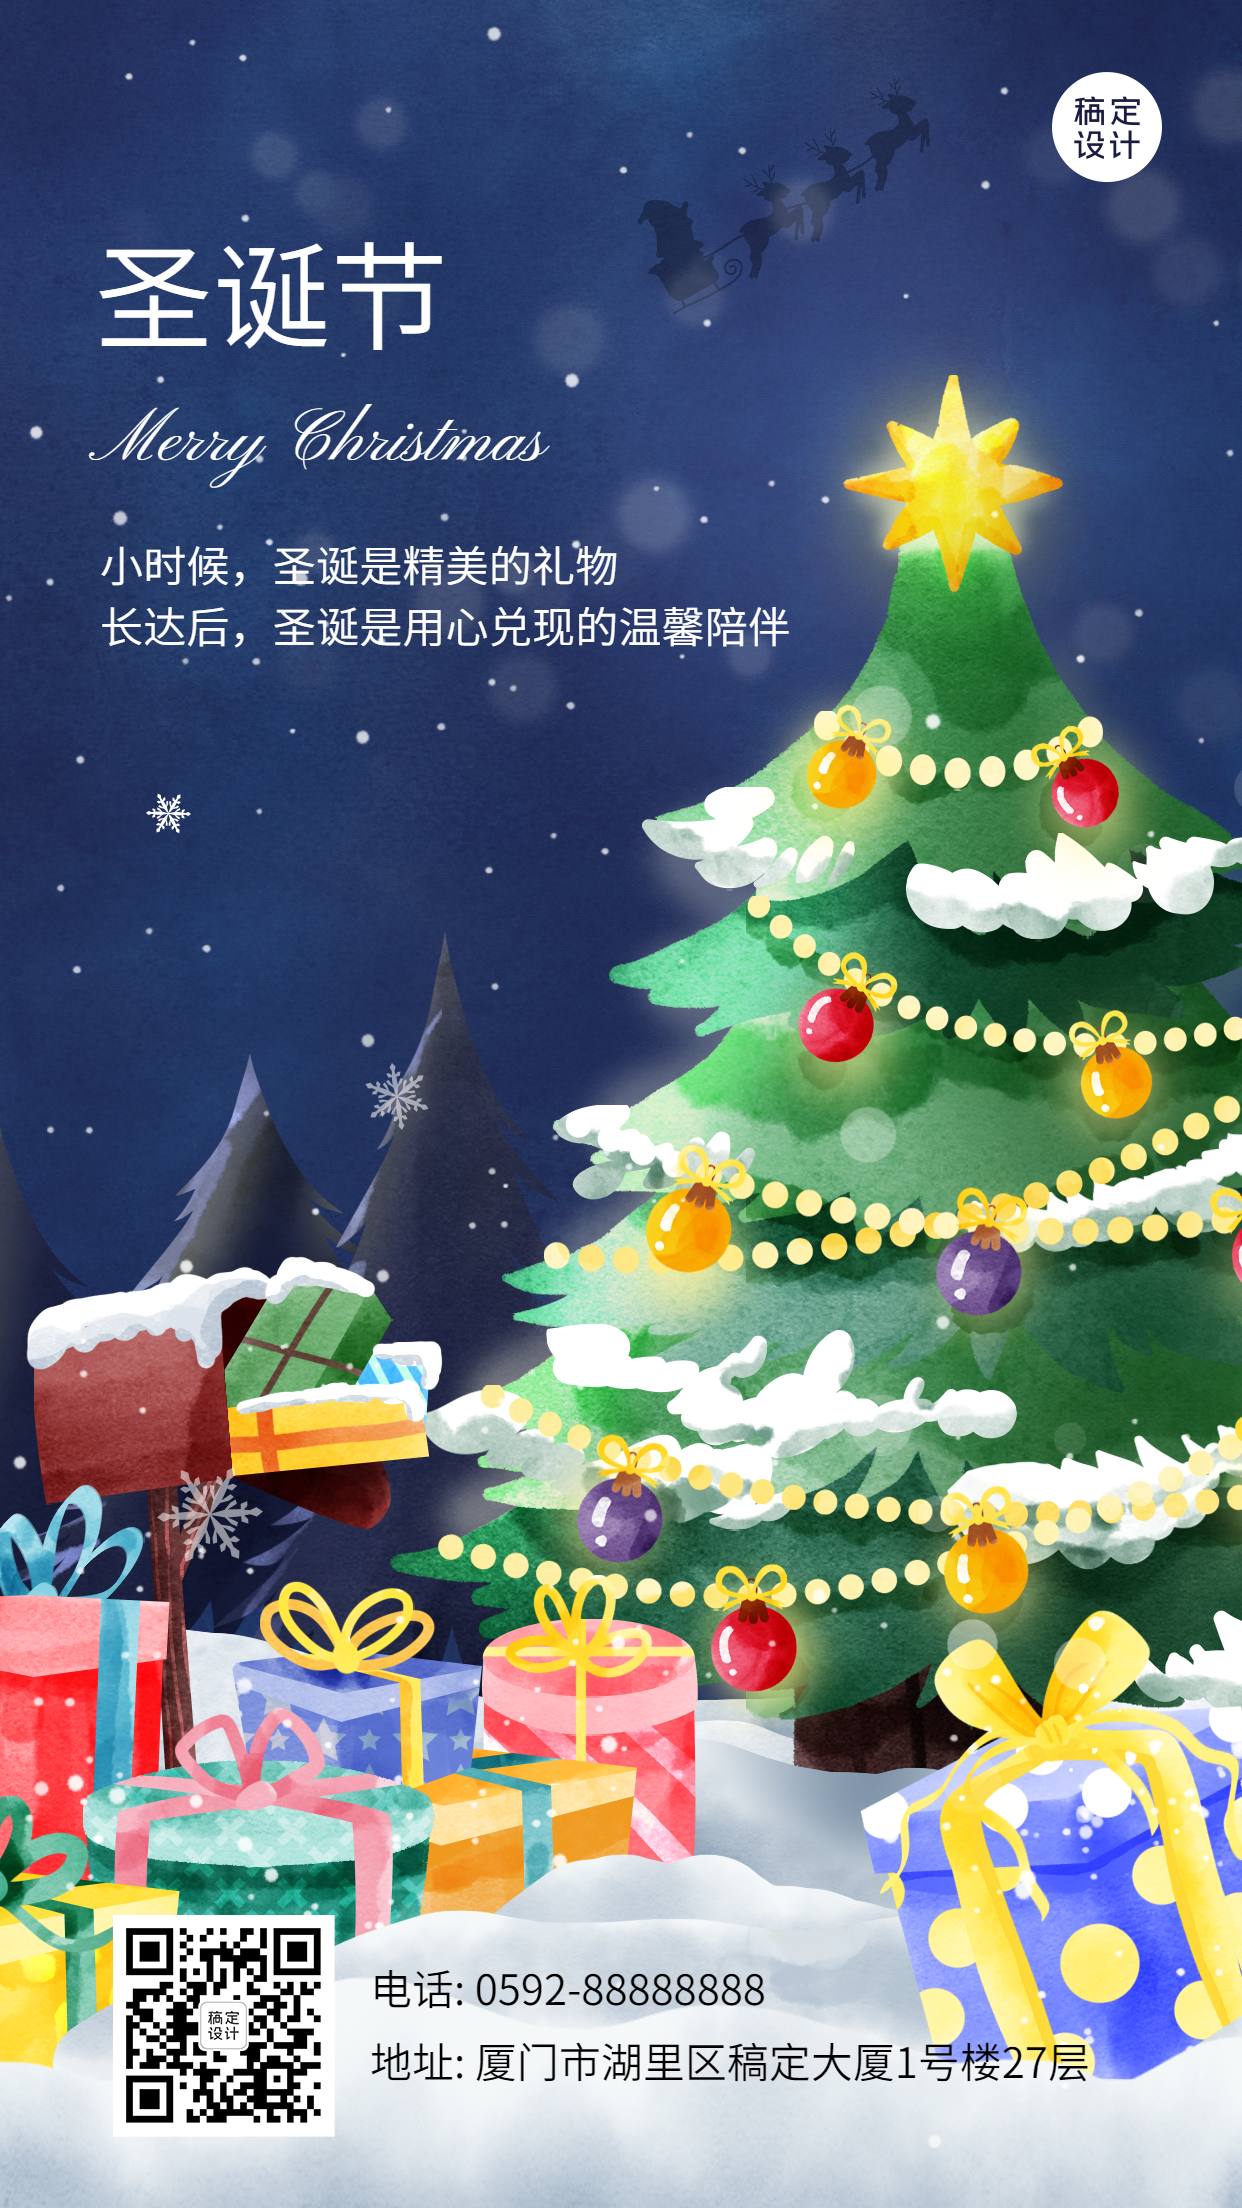 圣诞节祝福圣诞树礼盒插画手机海报